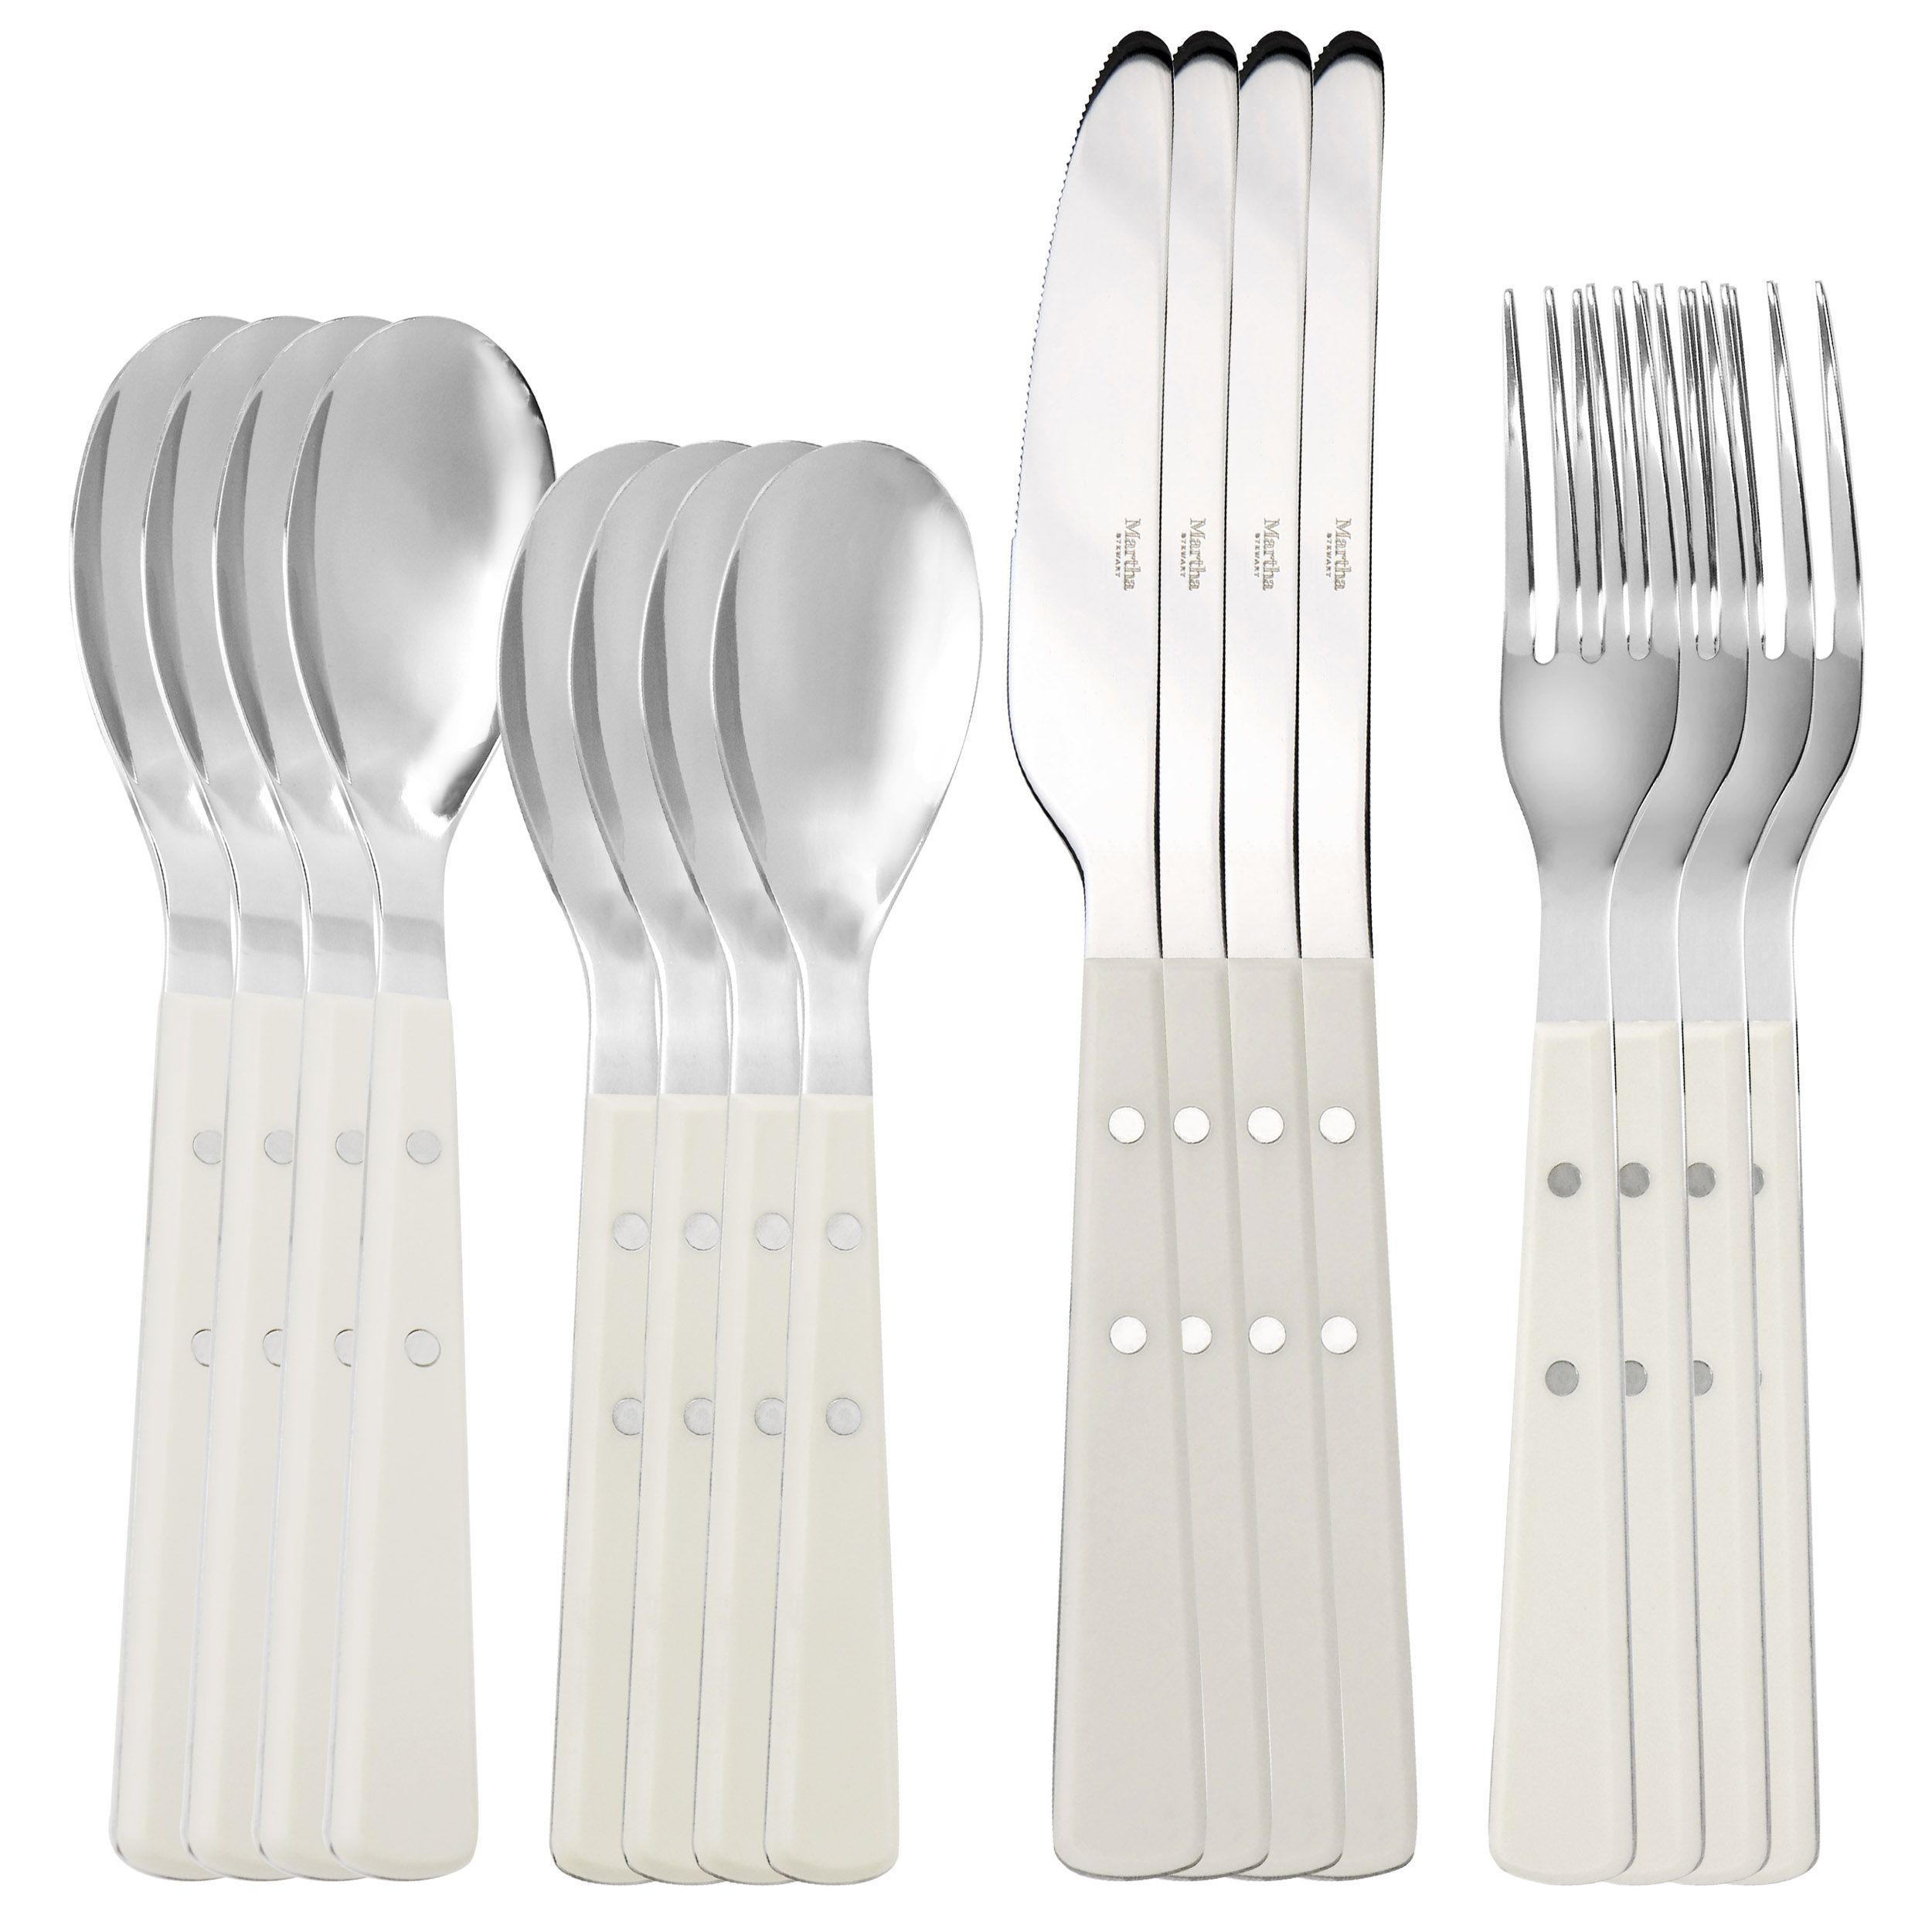 Martha Stewart Everyday Three Piece Stainless Steel Cutlery Set In